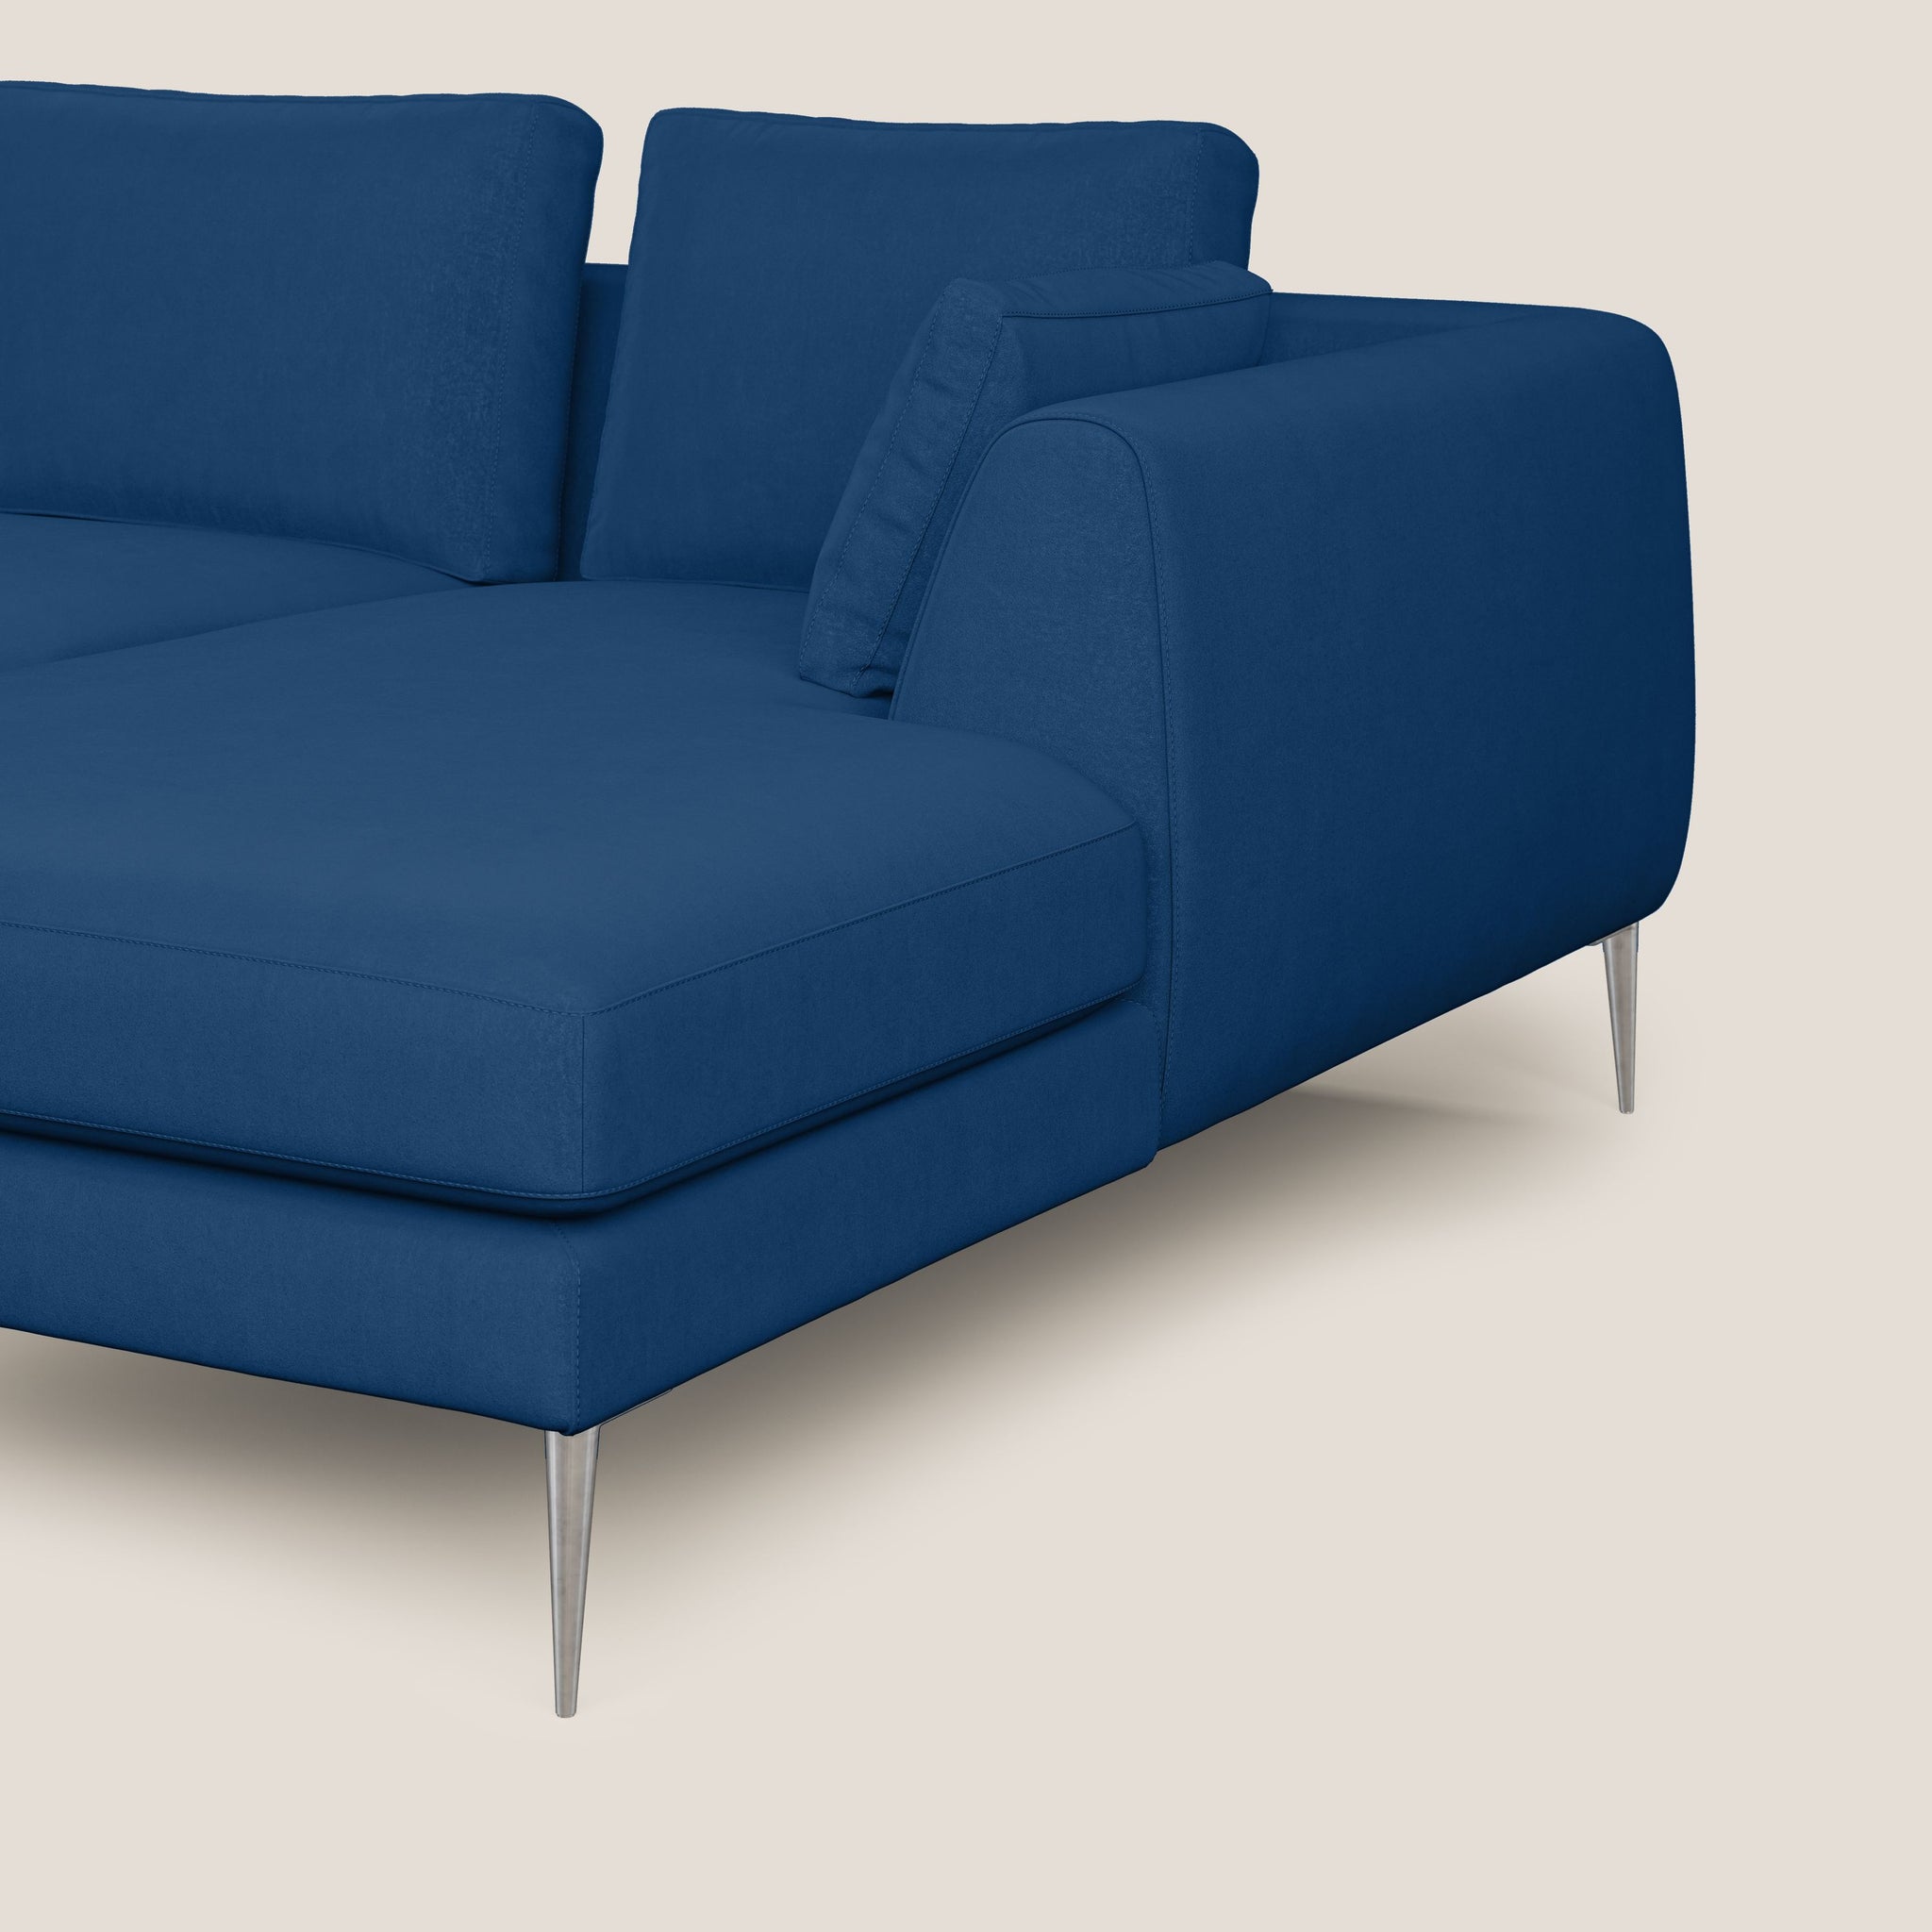 Plano divano moderno angolare con penisola in microfibra smacchiabile T11